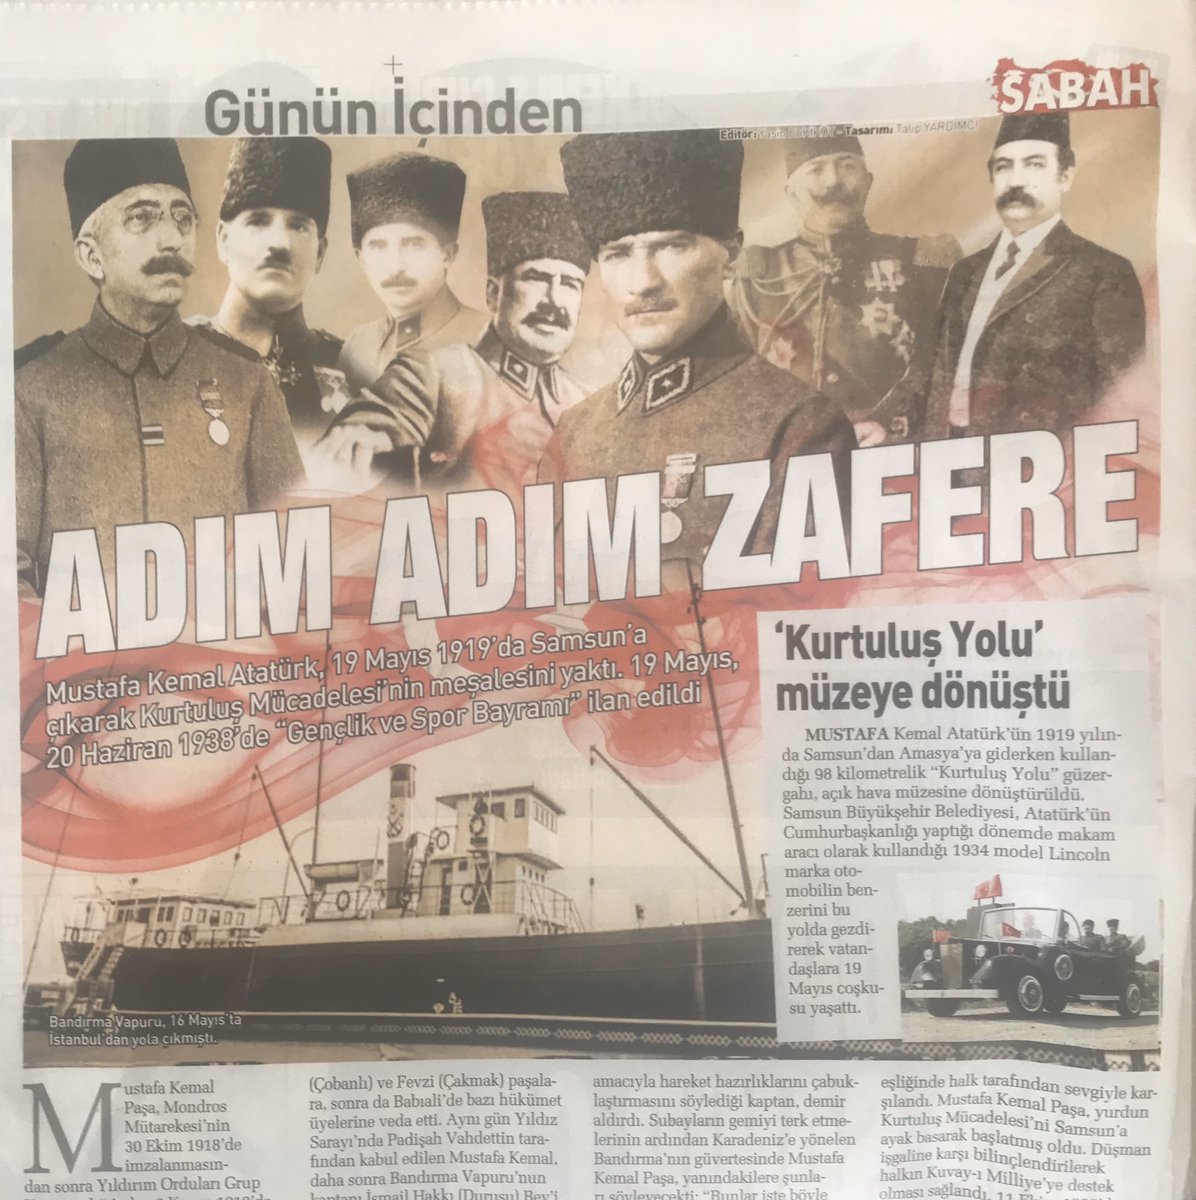 Sabah gazetesi, 19 Mayıs’ın yıldönümü için hazırladığı görsele Sultan Vahdettin ve işbirlikçi Damat Ferit’in (en sağda) fotoğraflarını koymuş.
Halbuki bu adamlar, Kuvayi Milliye’yi başlattıkları için Atatürk, İsmet ve Fevzi paşaları idama mahkum etmişti.